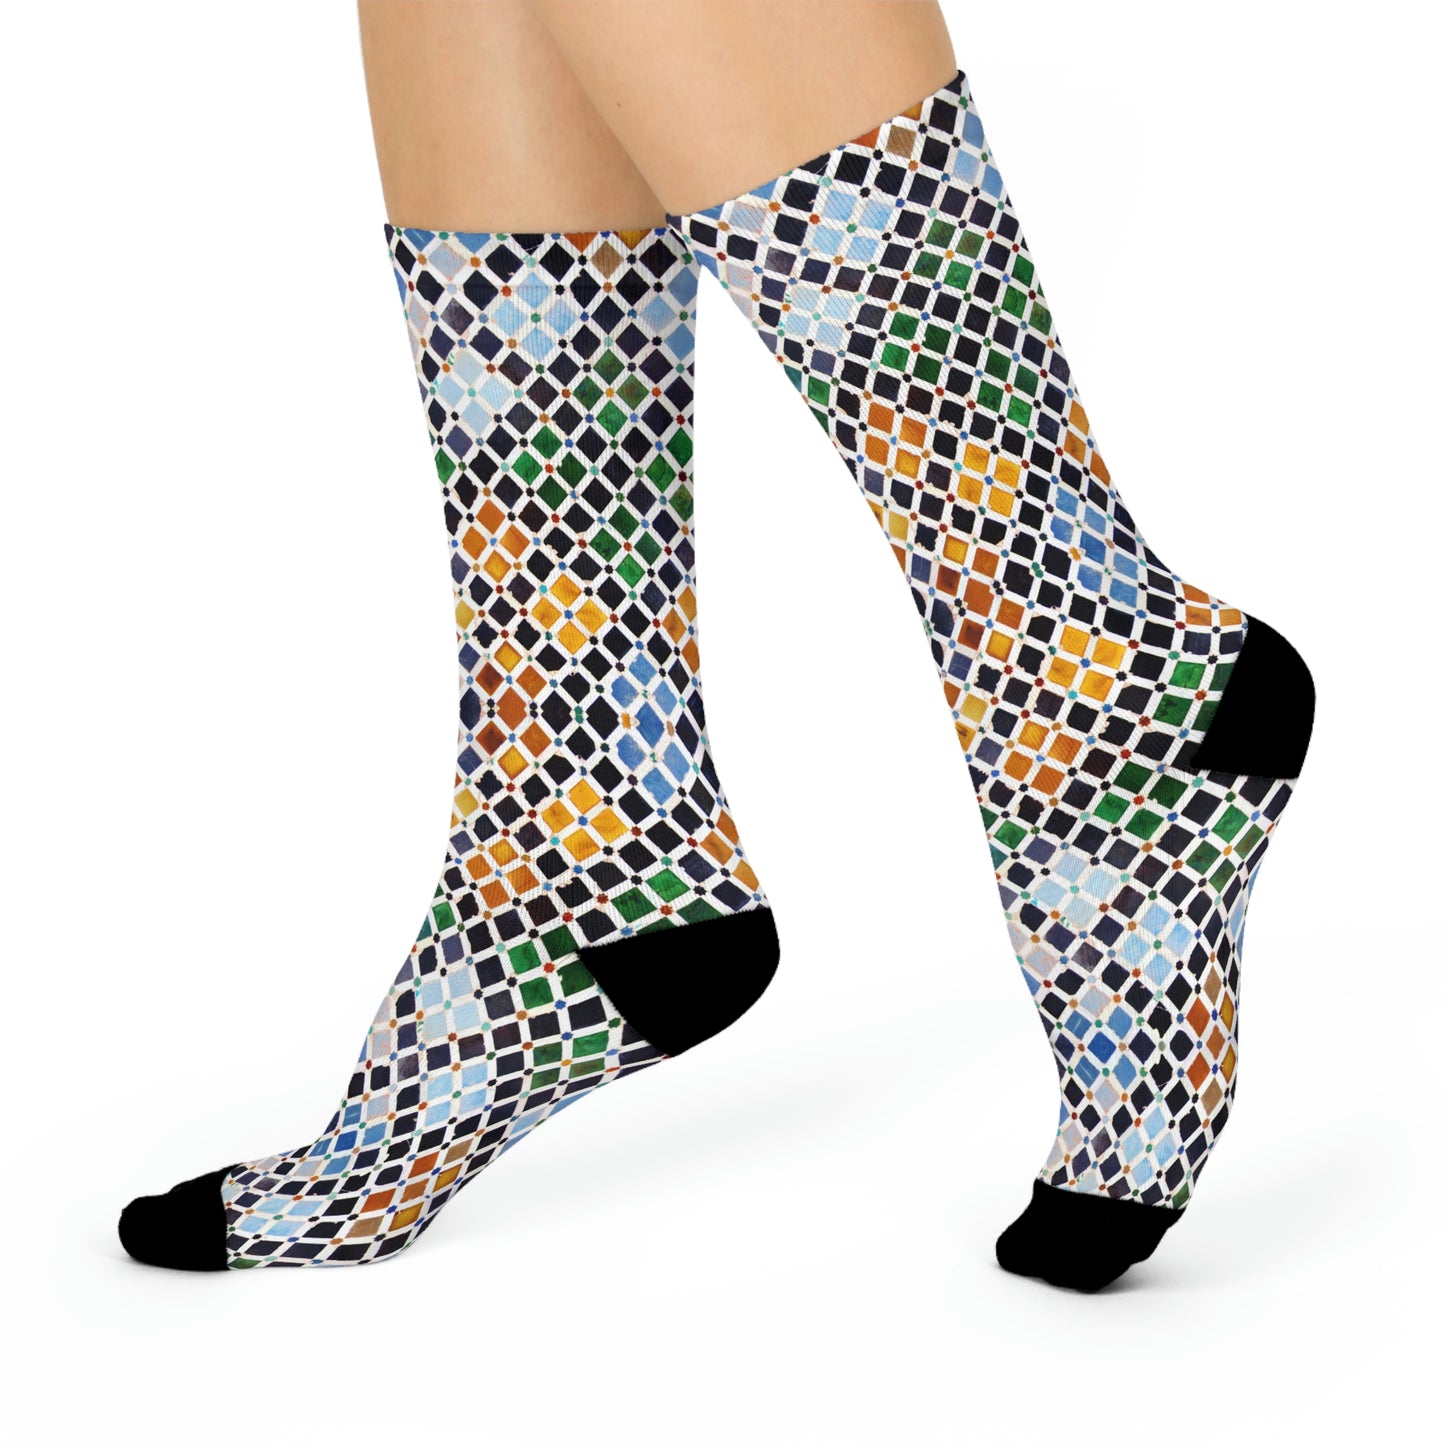 Tile Socks, European